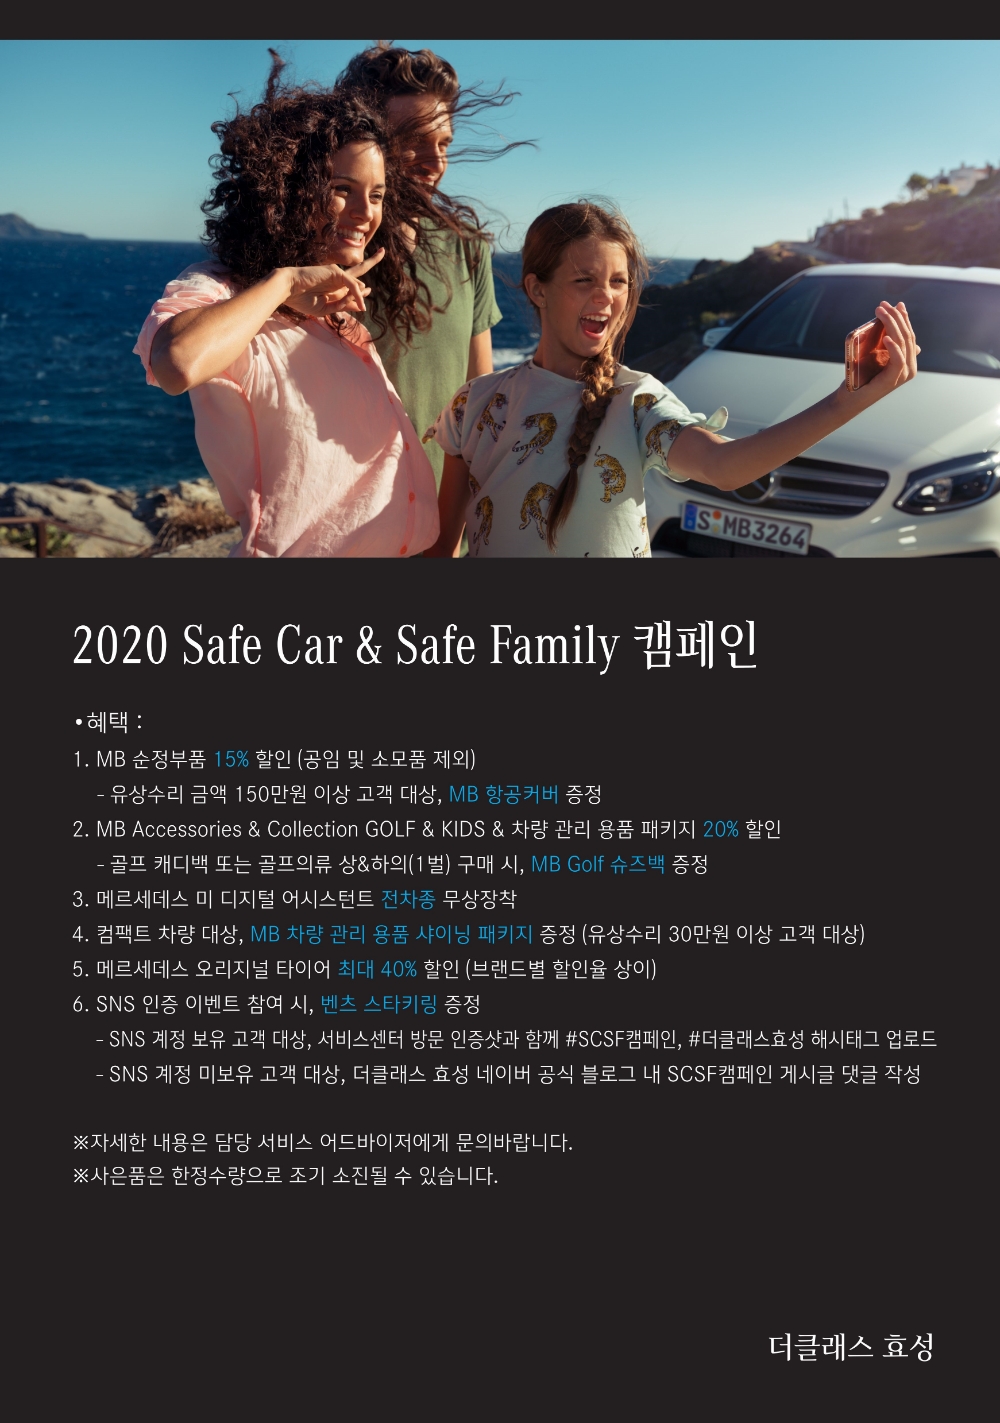 더클래스 효성,‘2020 Safe Car & Safe Family’ 캠페인 실시